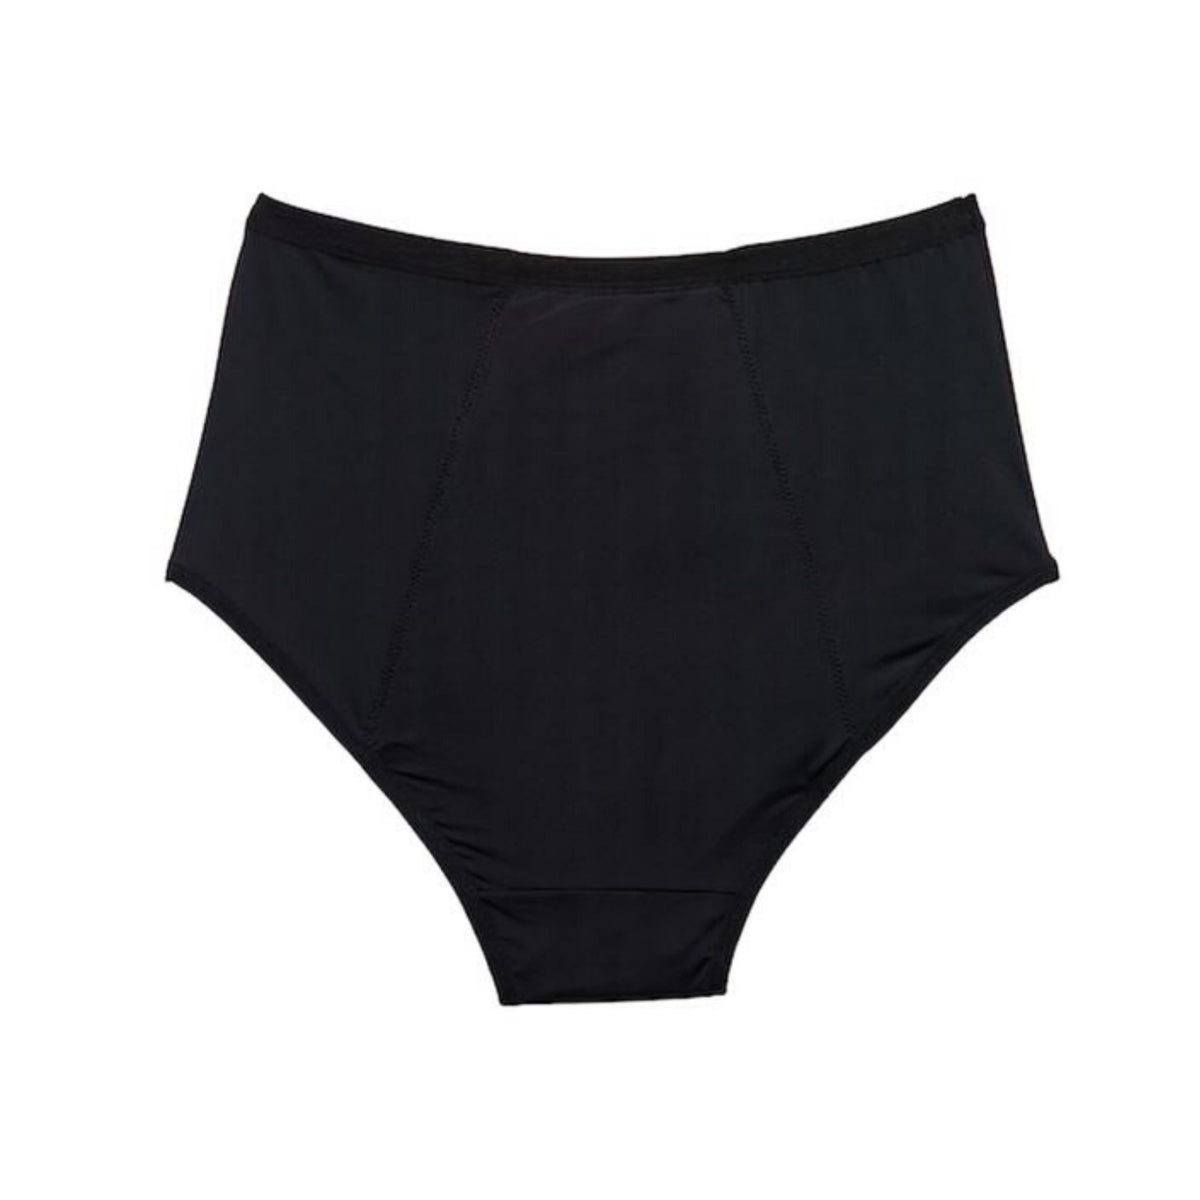 Juju - Absorbent Period Underwear - Full Brief (Light Flow) - Go For Zero